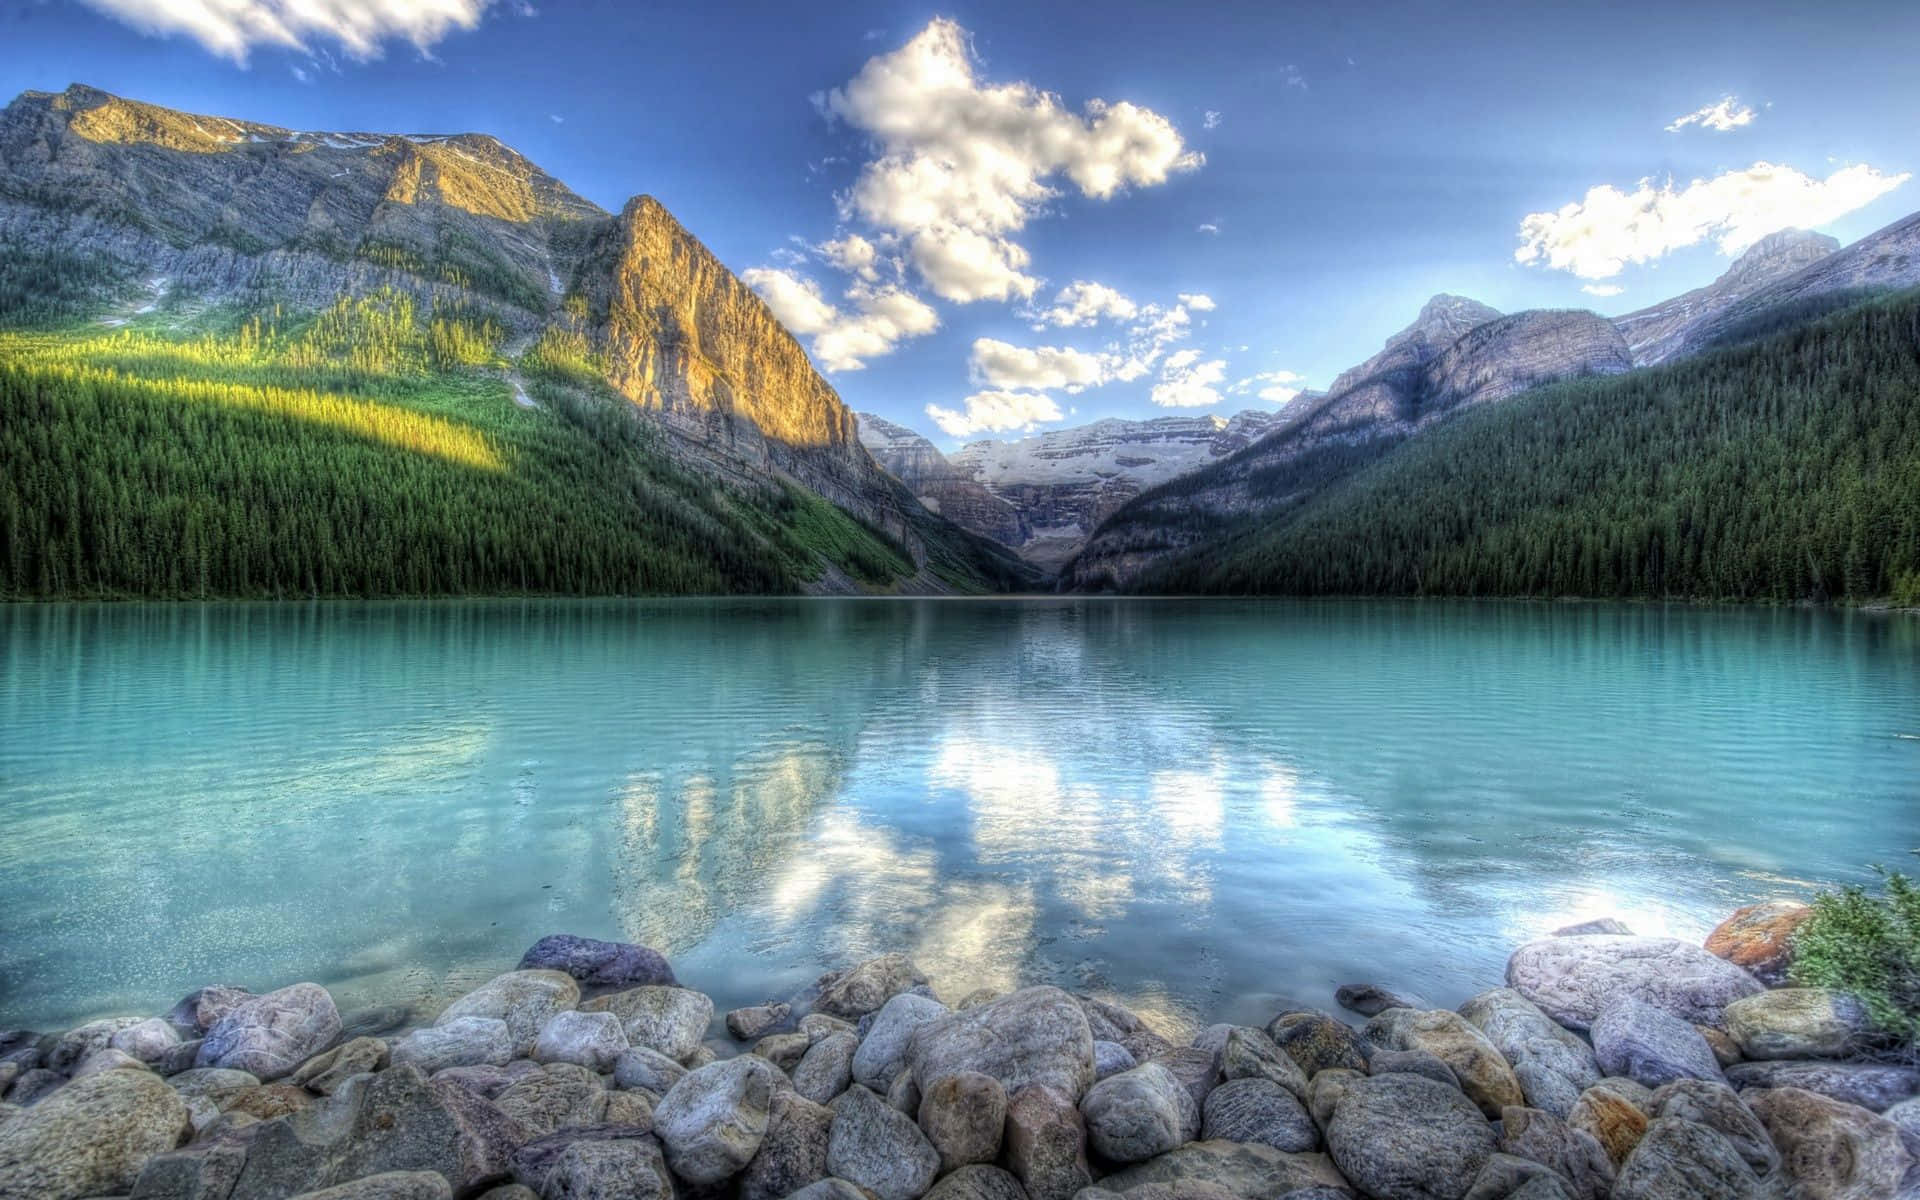 "The Natural Splendor of Beautiful Lake" Wallpaper